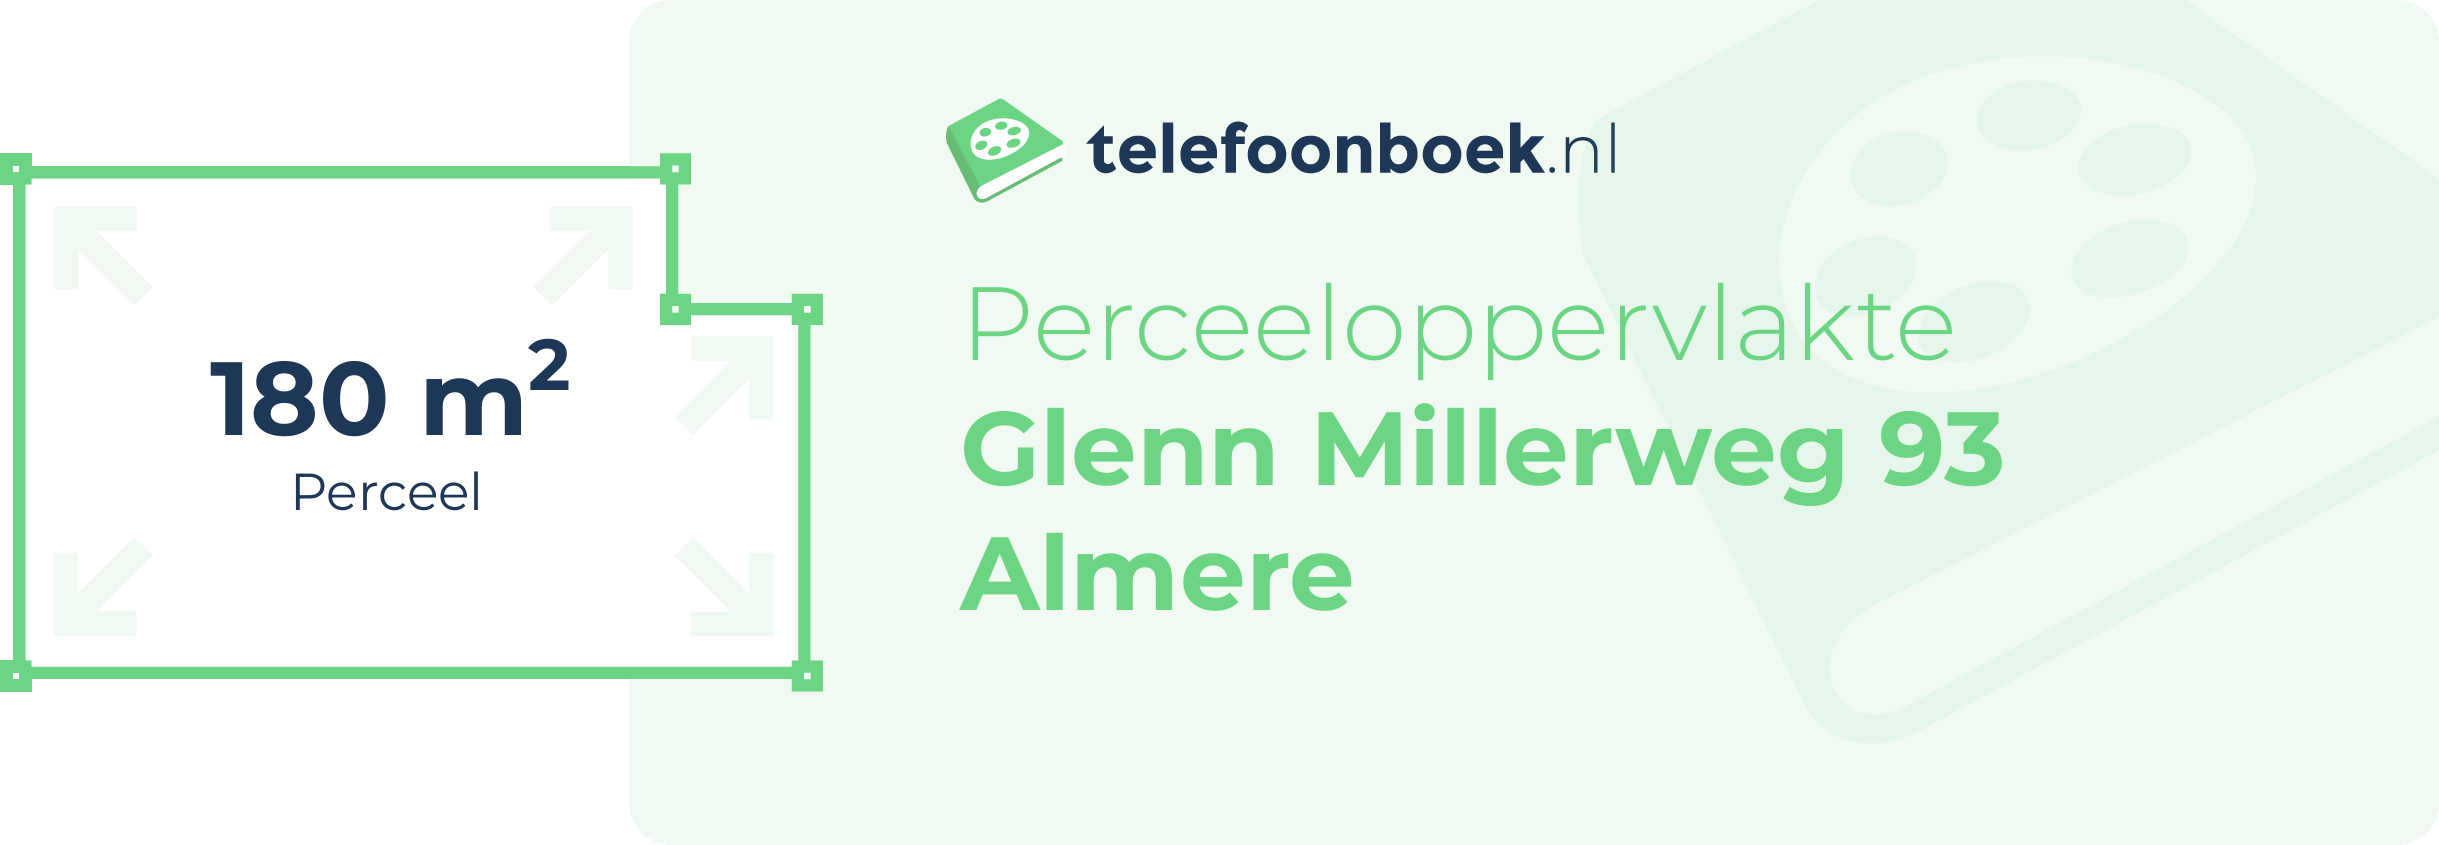 Perceeloppervlakte Glenn Millerweg 93 Almere